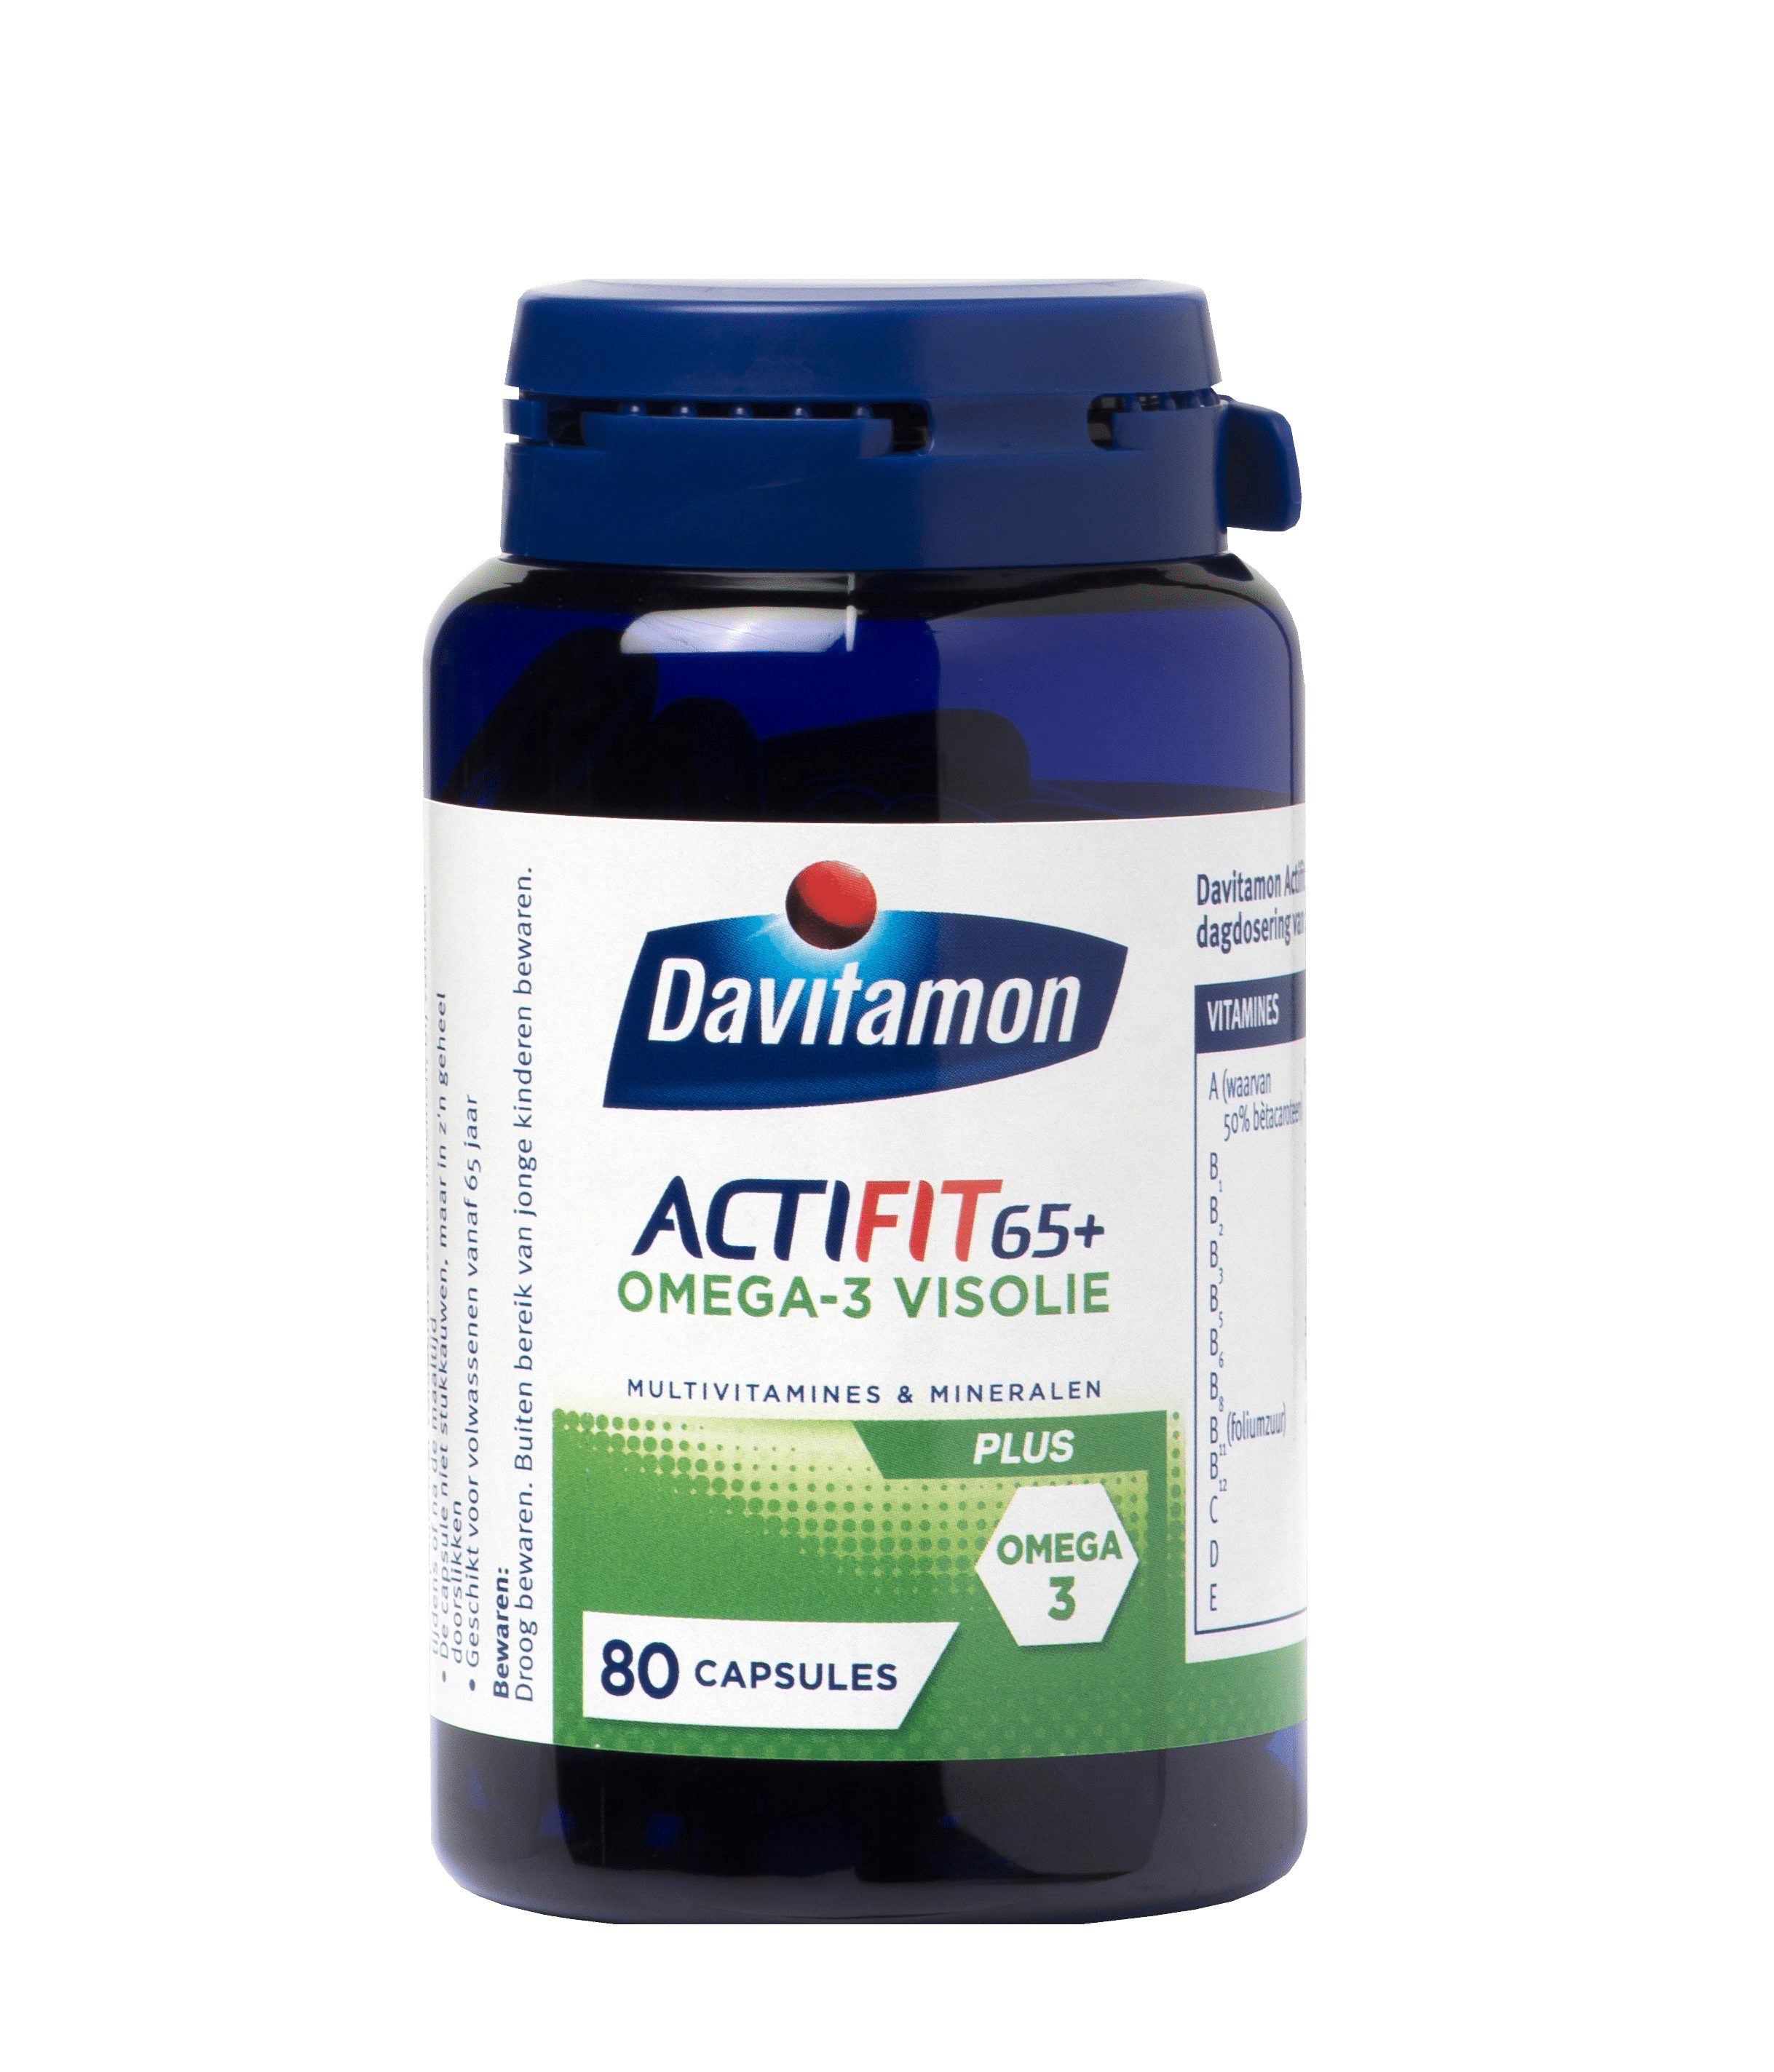 Aannemer recept berouw hebben Davitamon Actifit 65+ Omega-3 Visolie: goed voor het hart